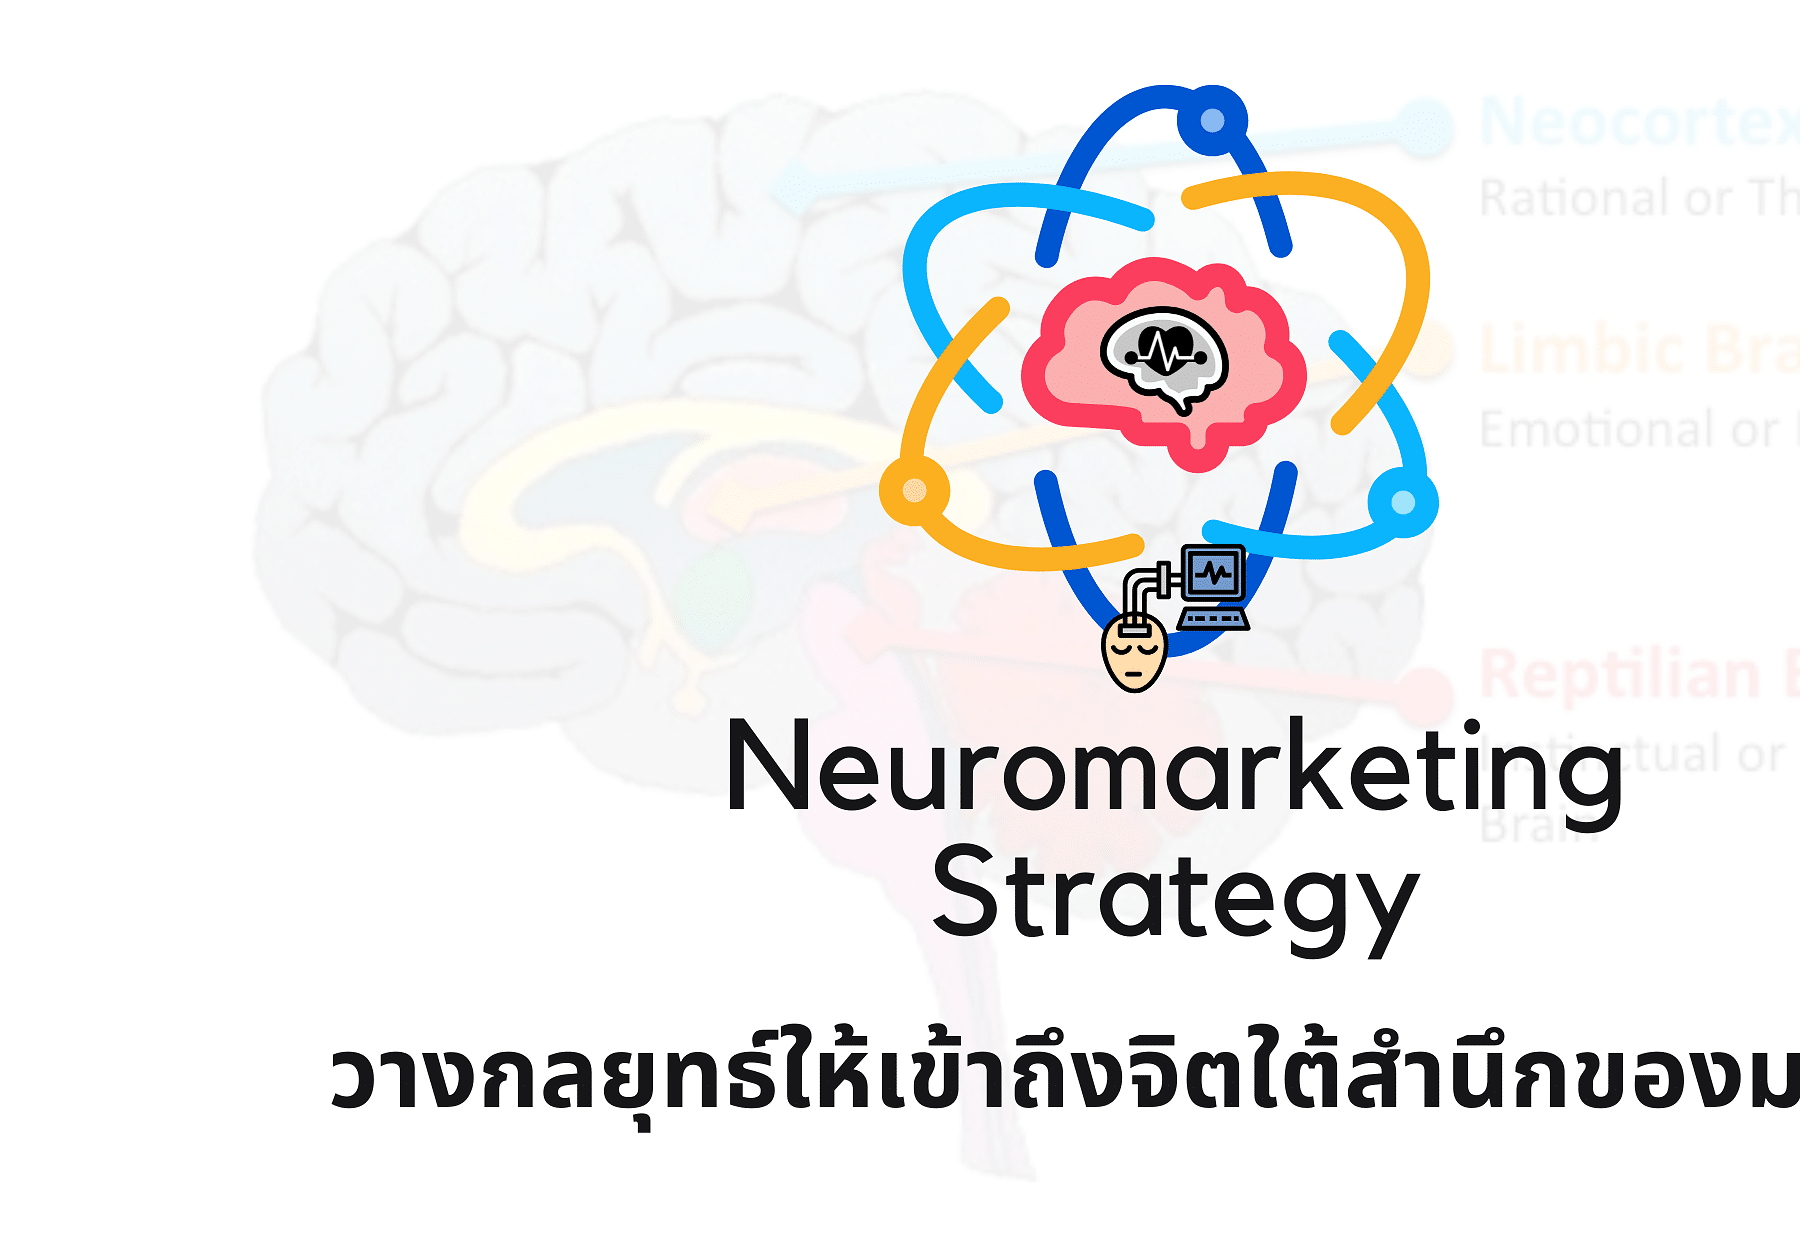 Neuromarketing Strategy วางกลยุทธ์ให้เข้าถึงจิตใต้สำนึกของมนุษย์